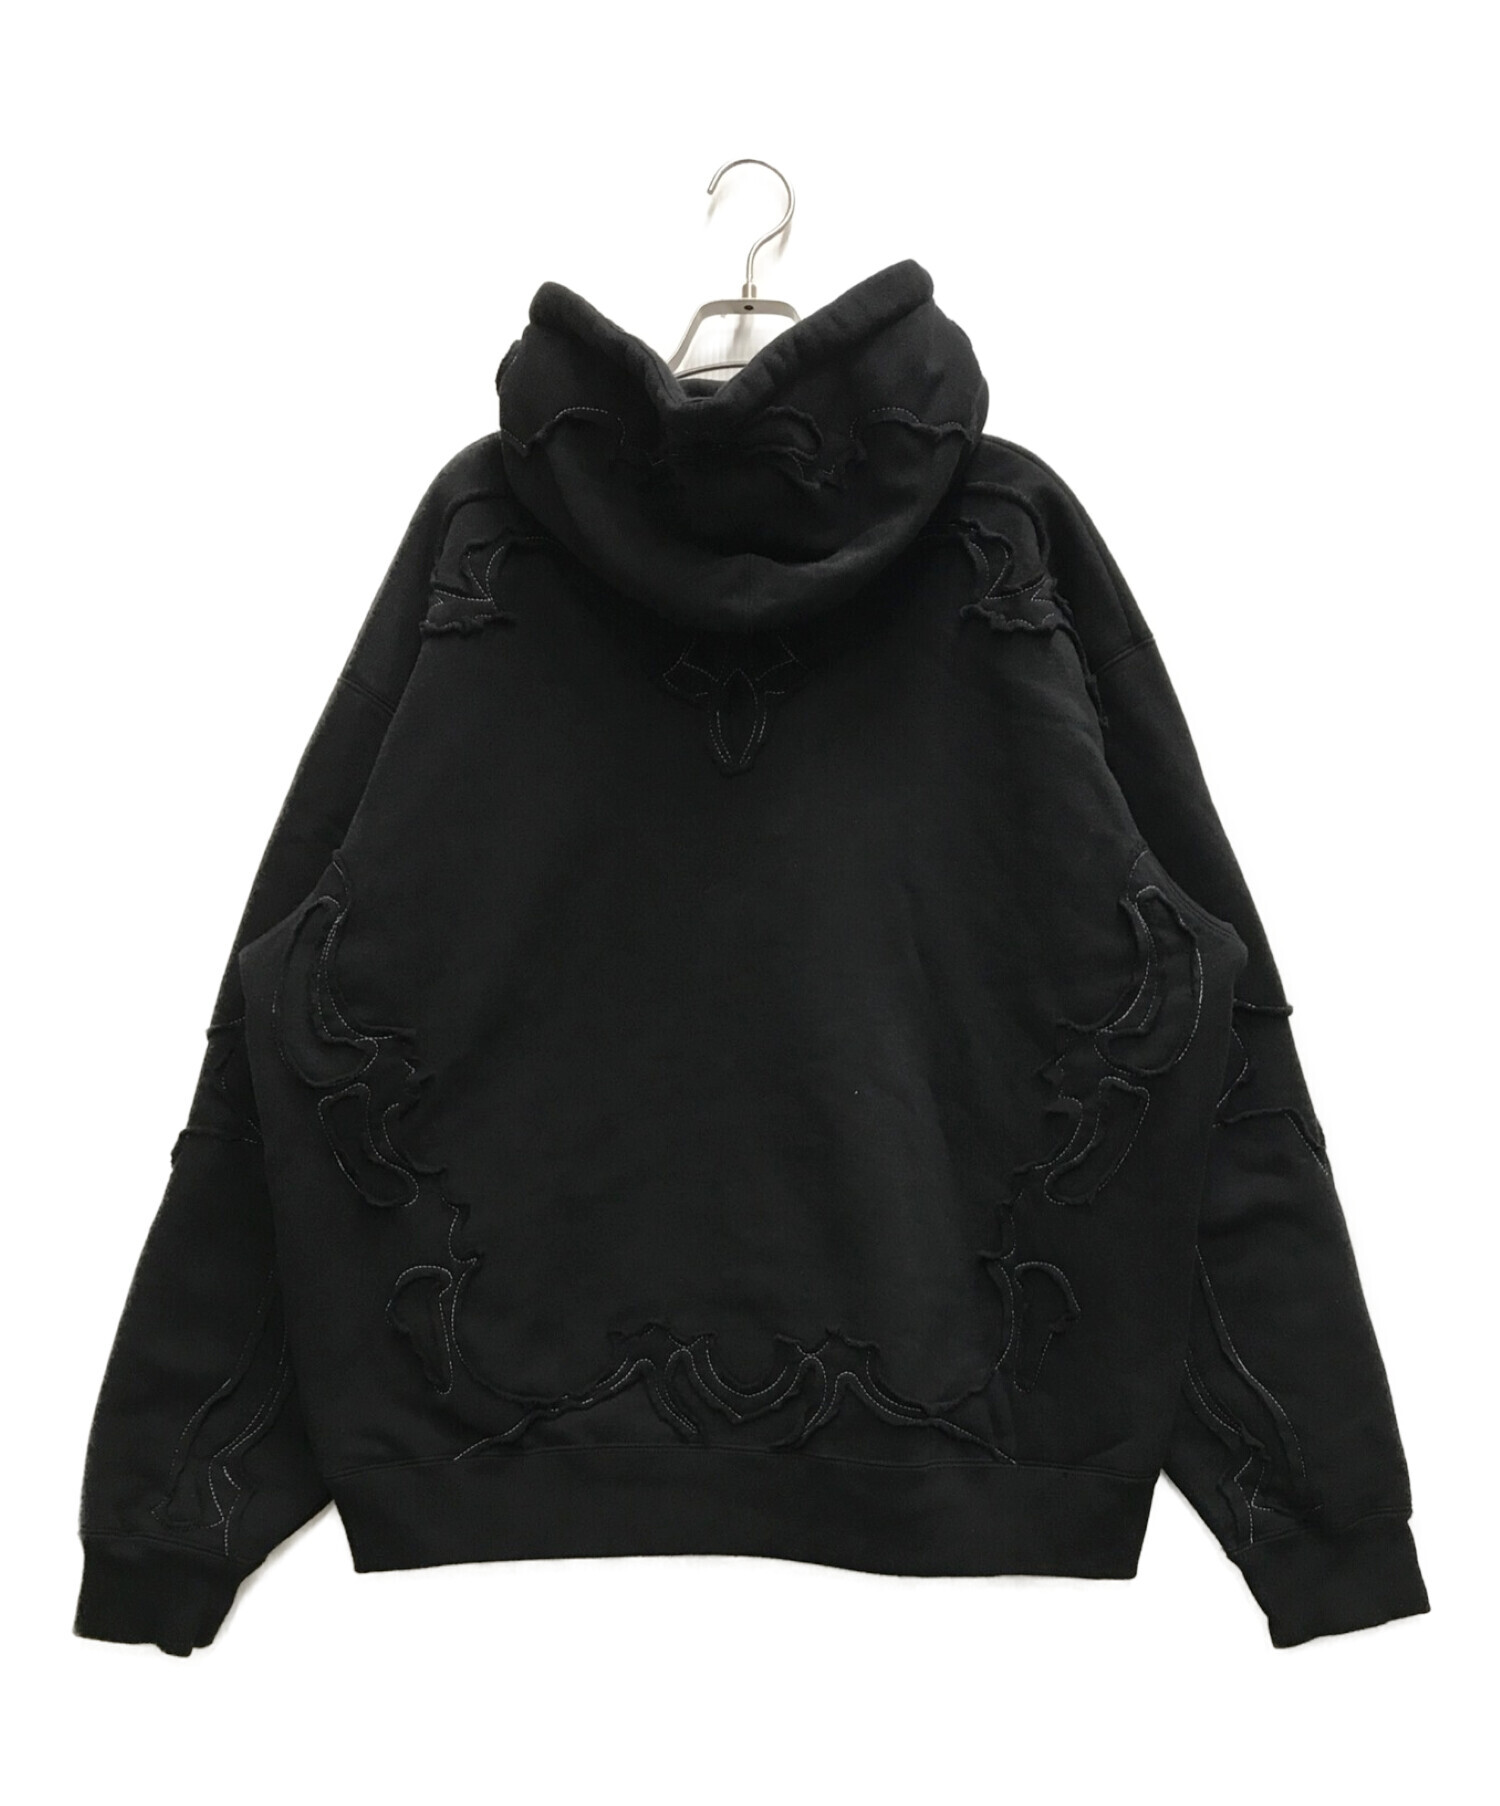 SUPREME (シュプリーム) Western CUT Out Hooded Sweatshirt ブラック サイズ:Ⅼ